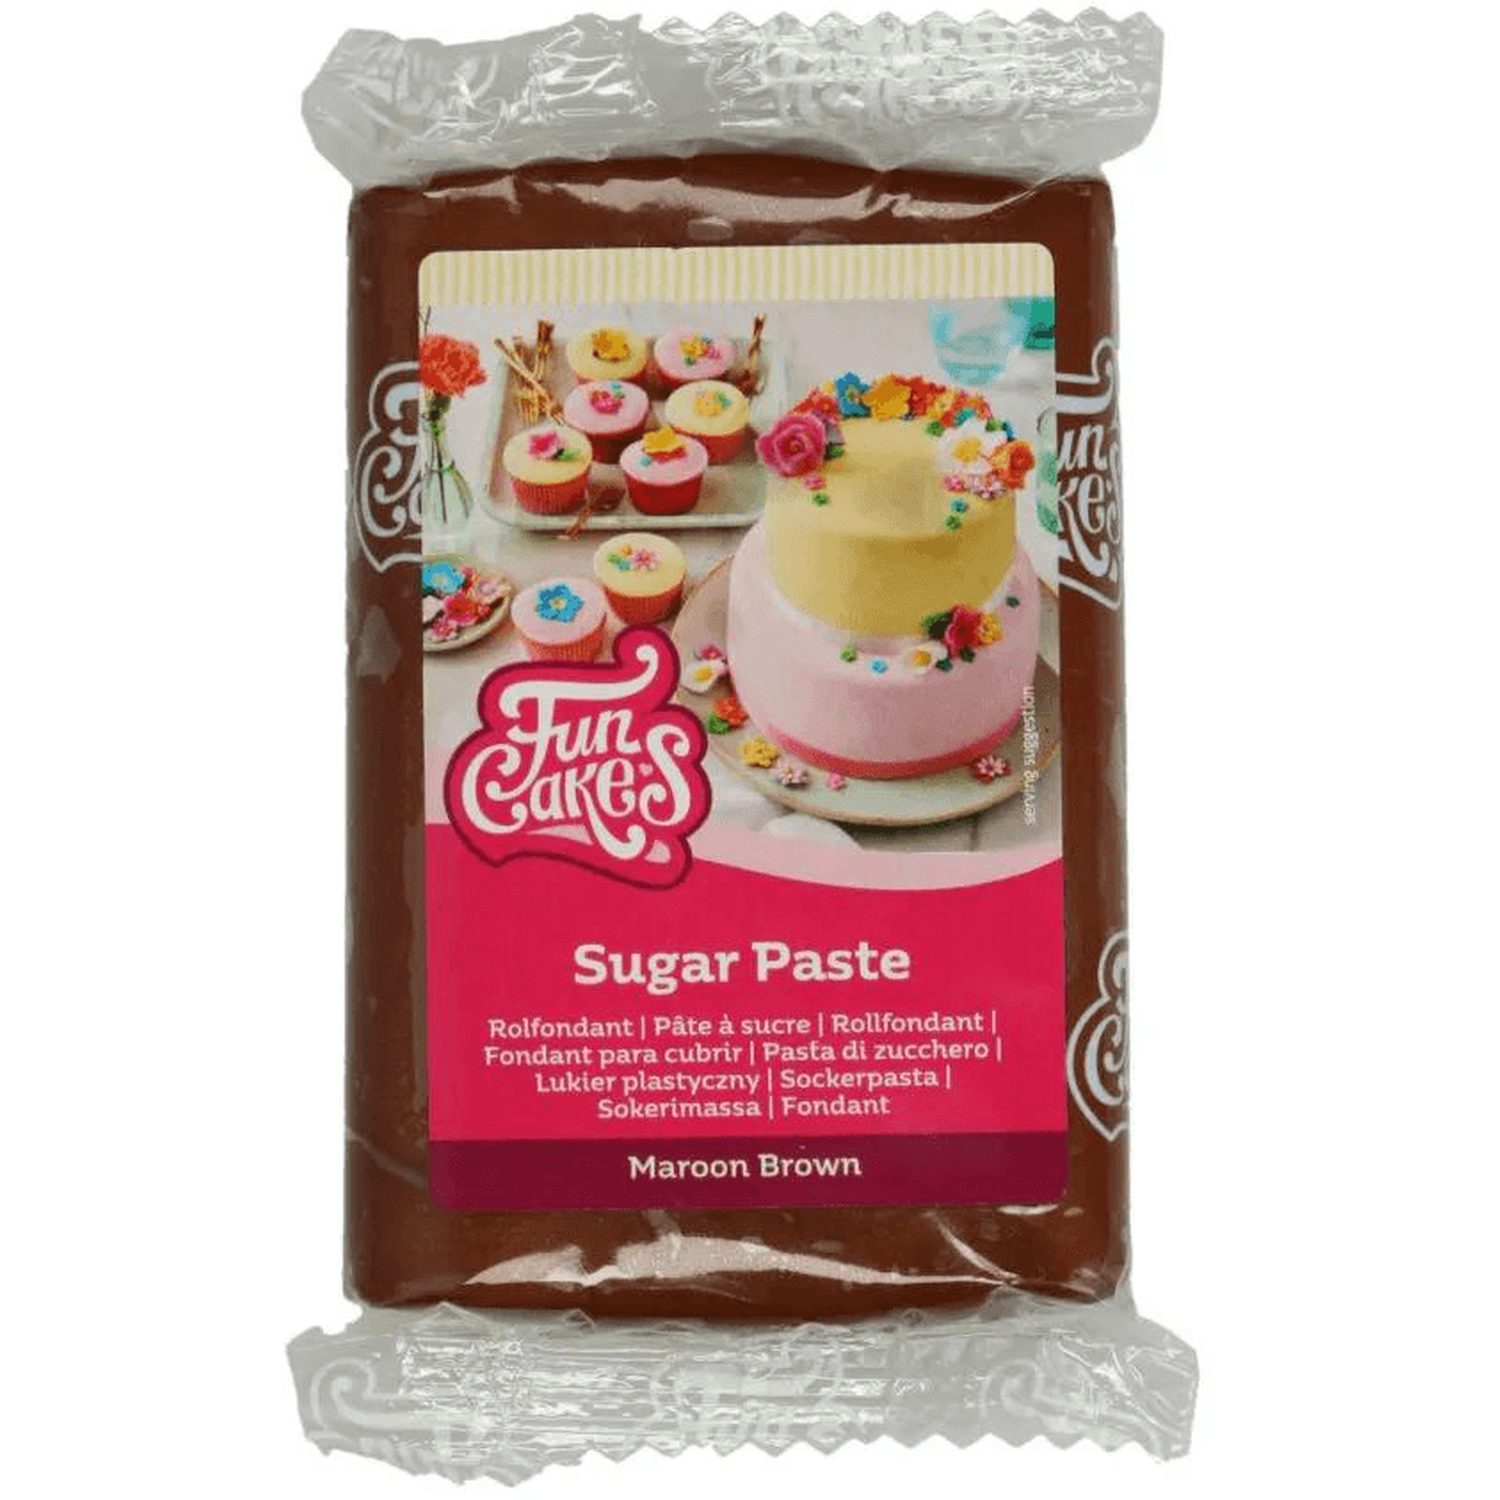 Funcakes Sugar Paste - Maroon Brown Image